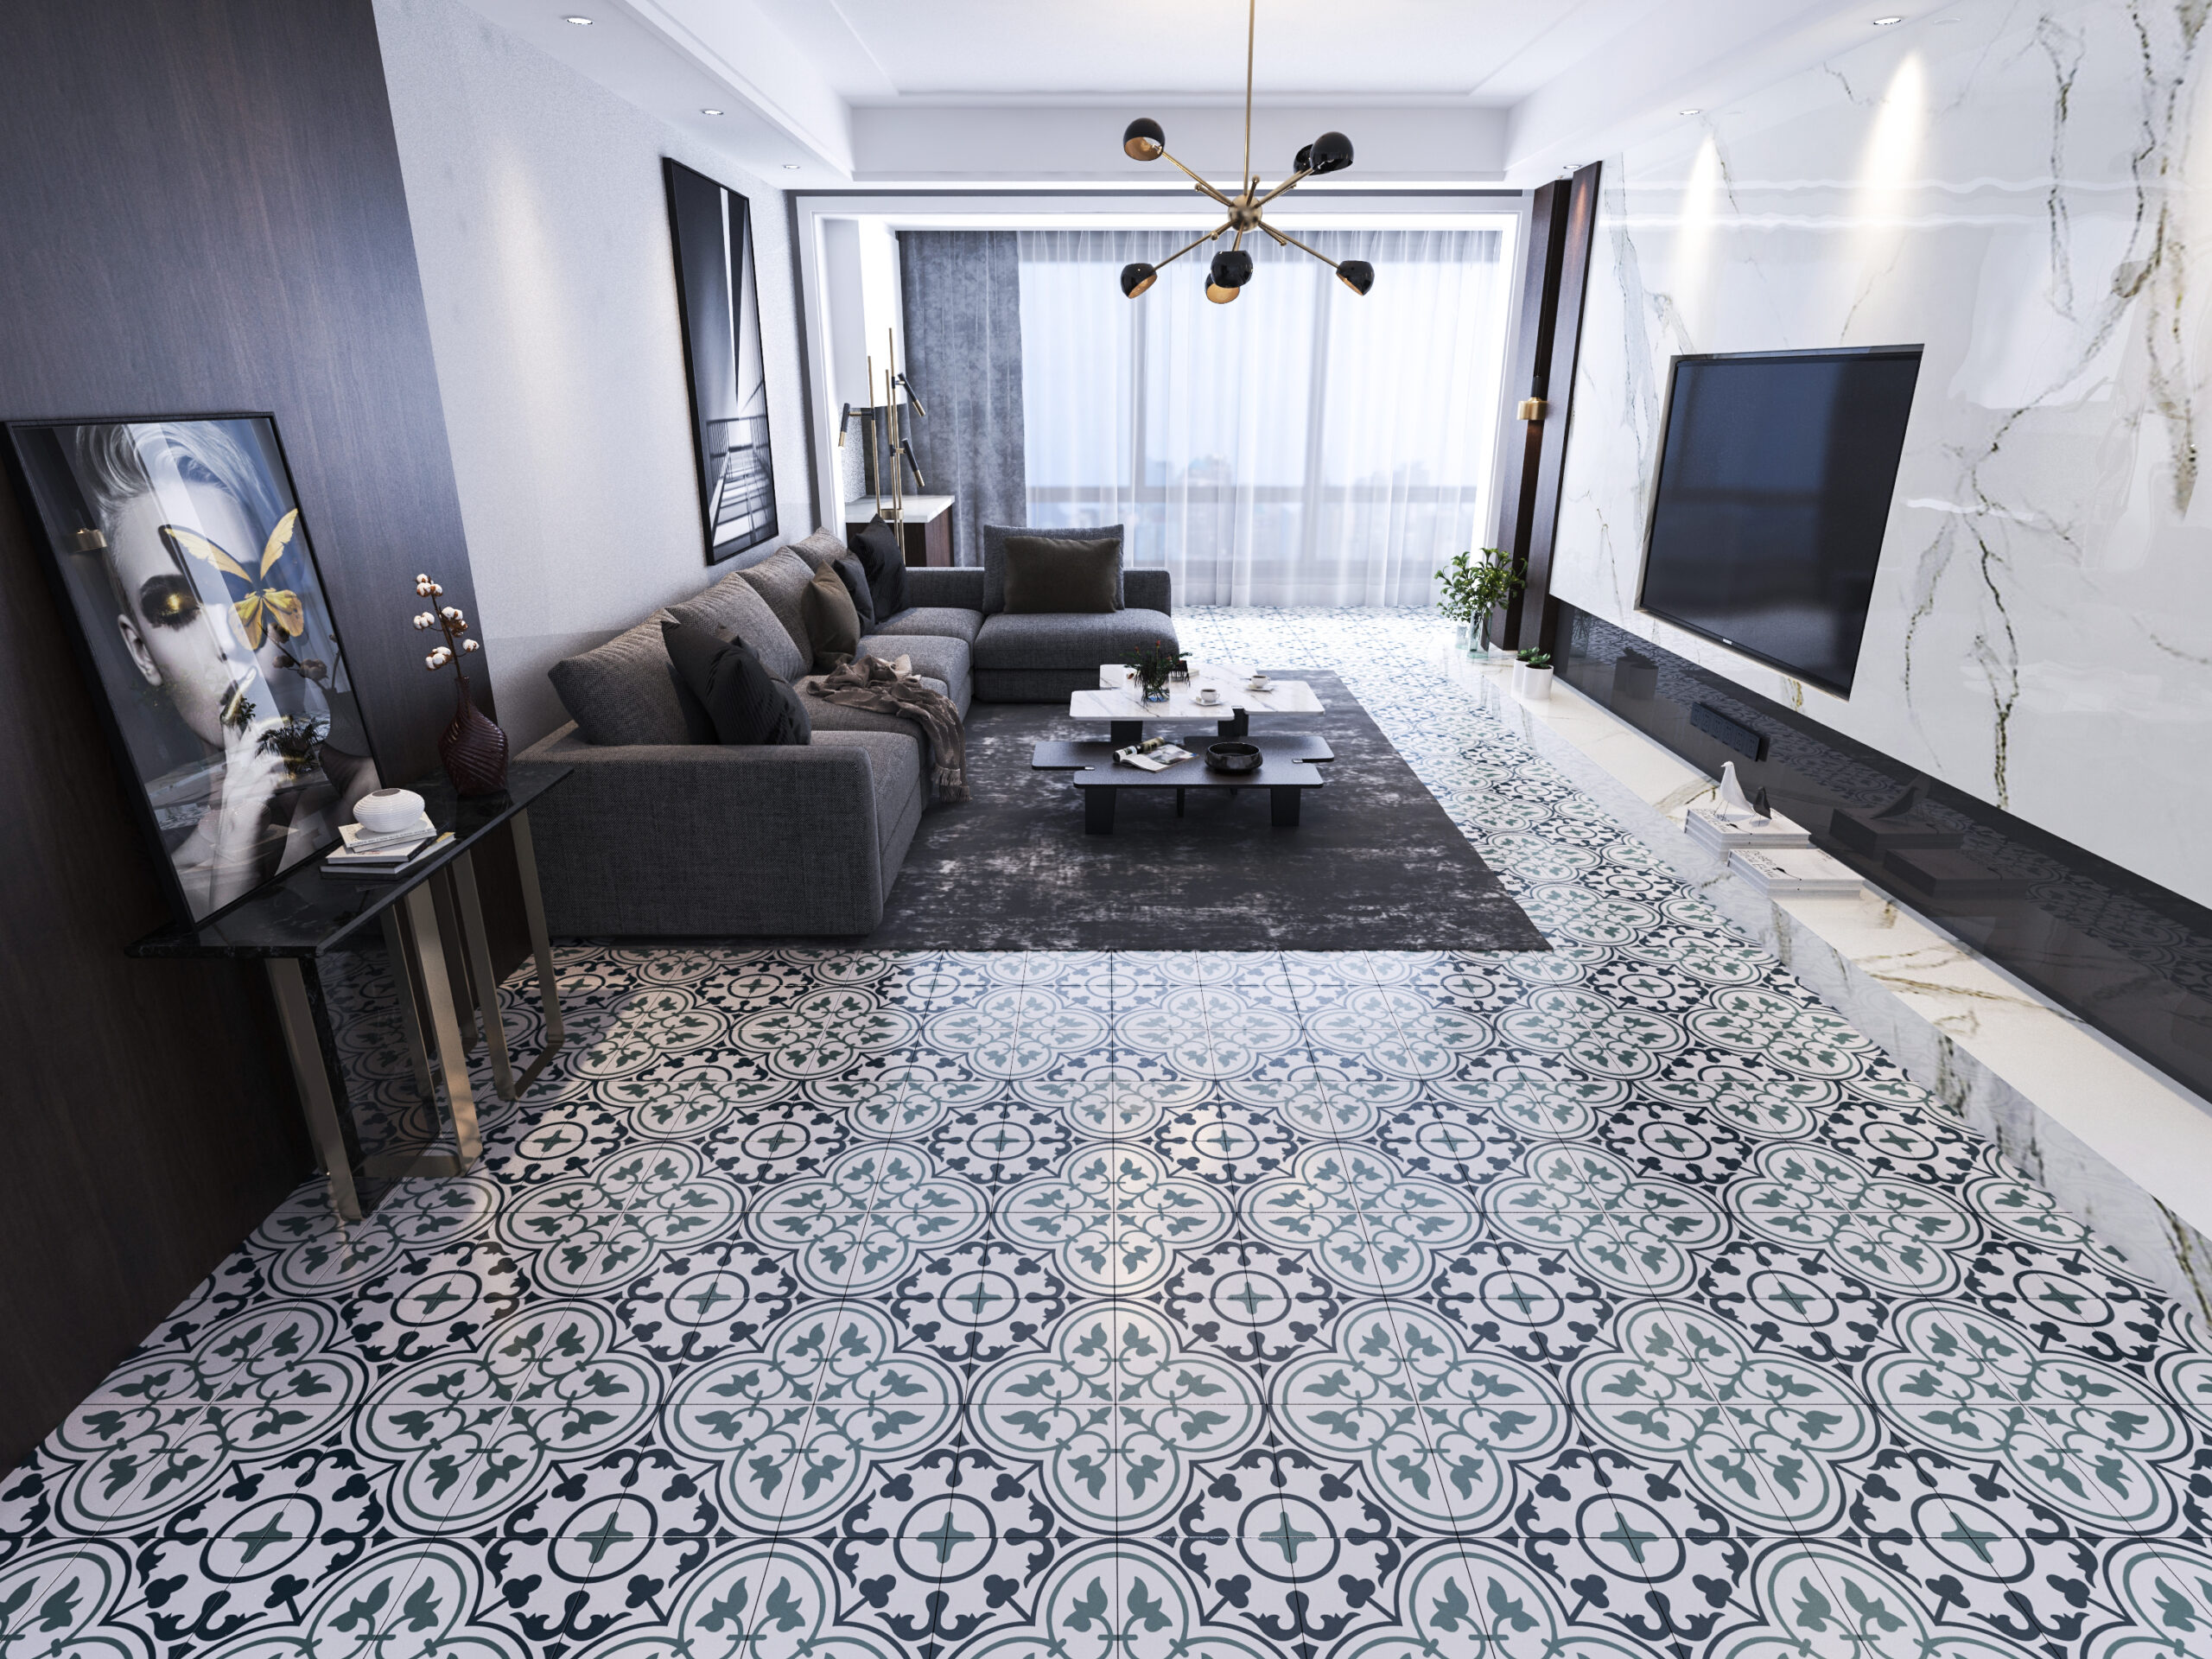 Tiles in Living Room scaled Carrelage décoré géométrique Ref. M 062 (C,F,M)